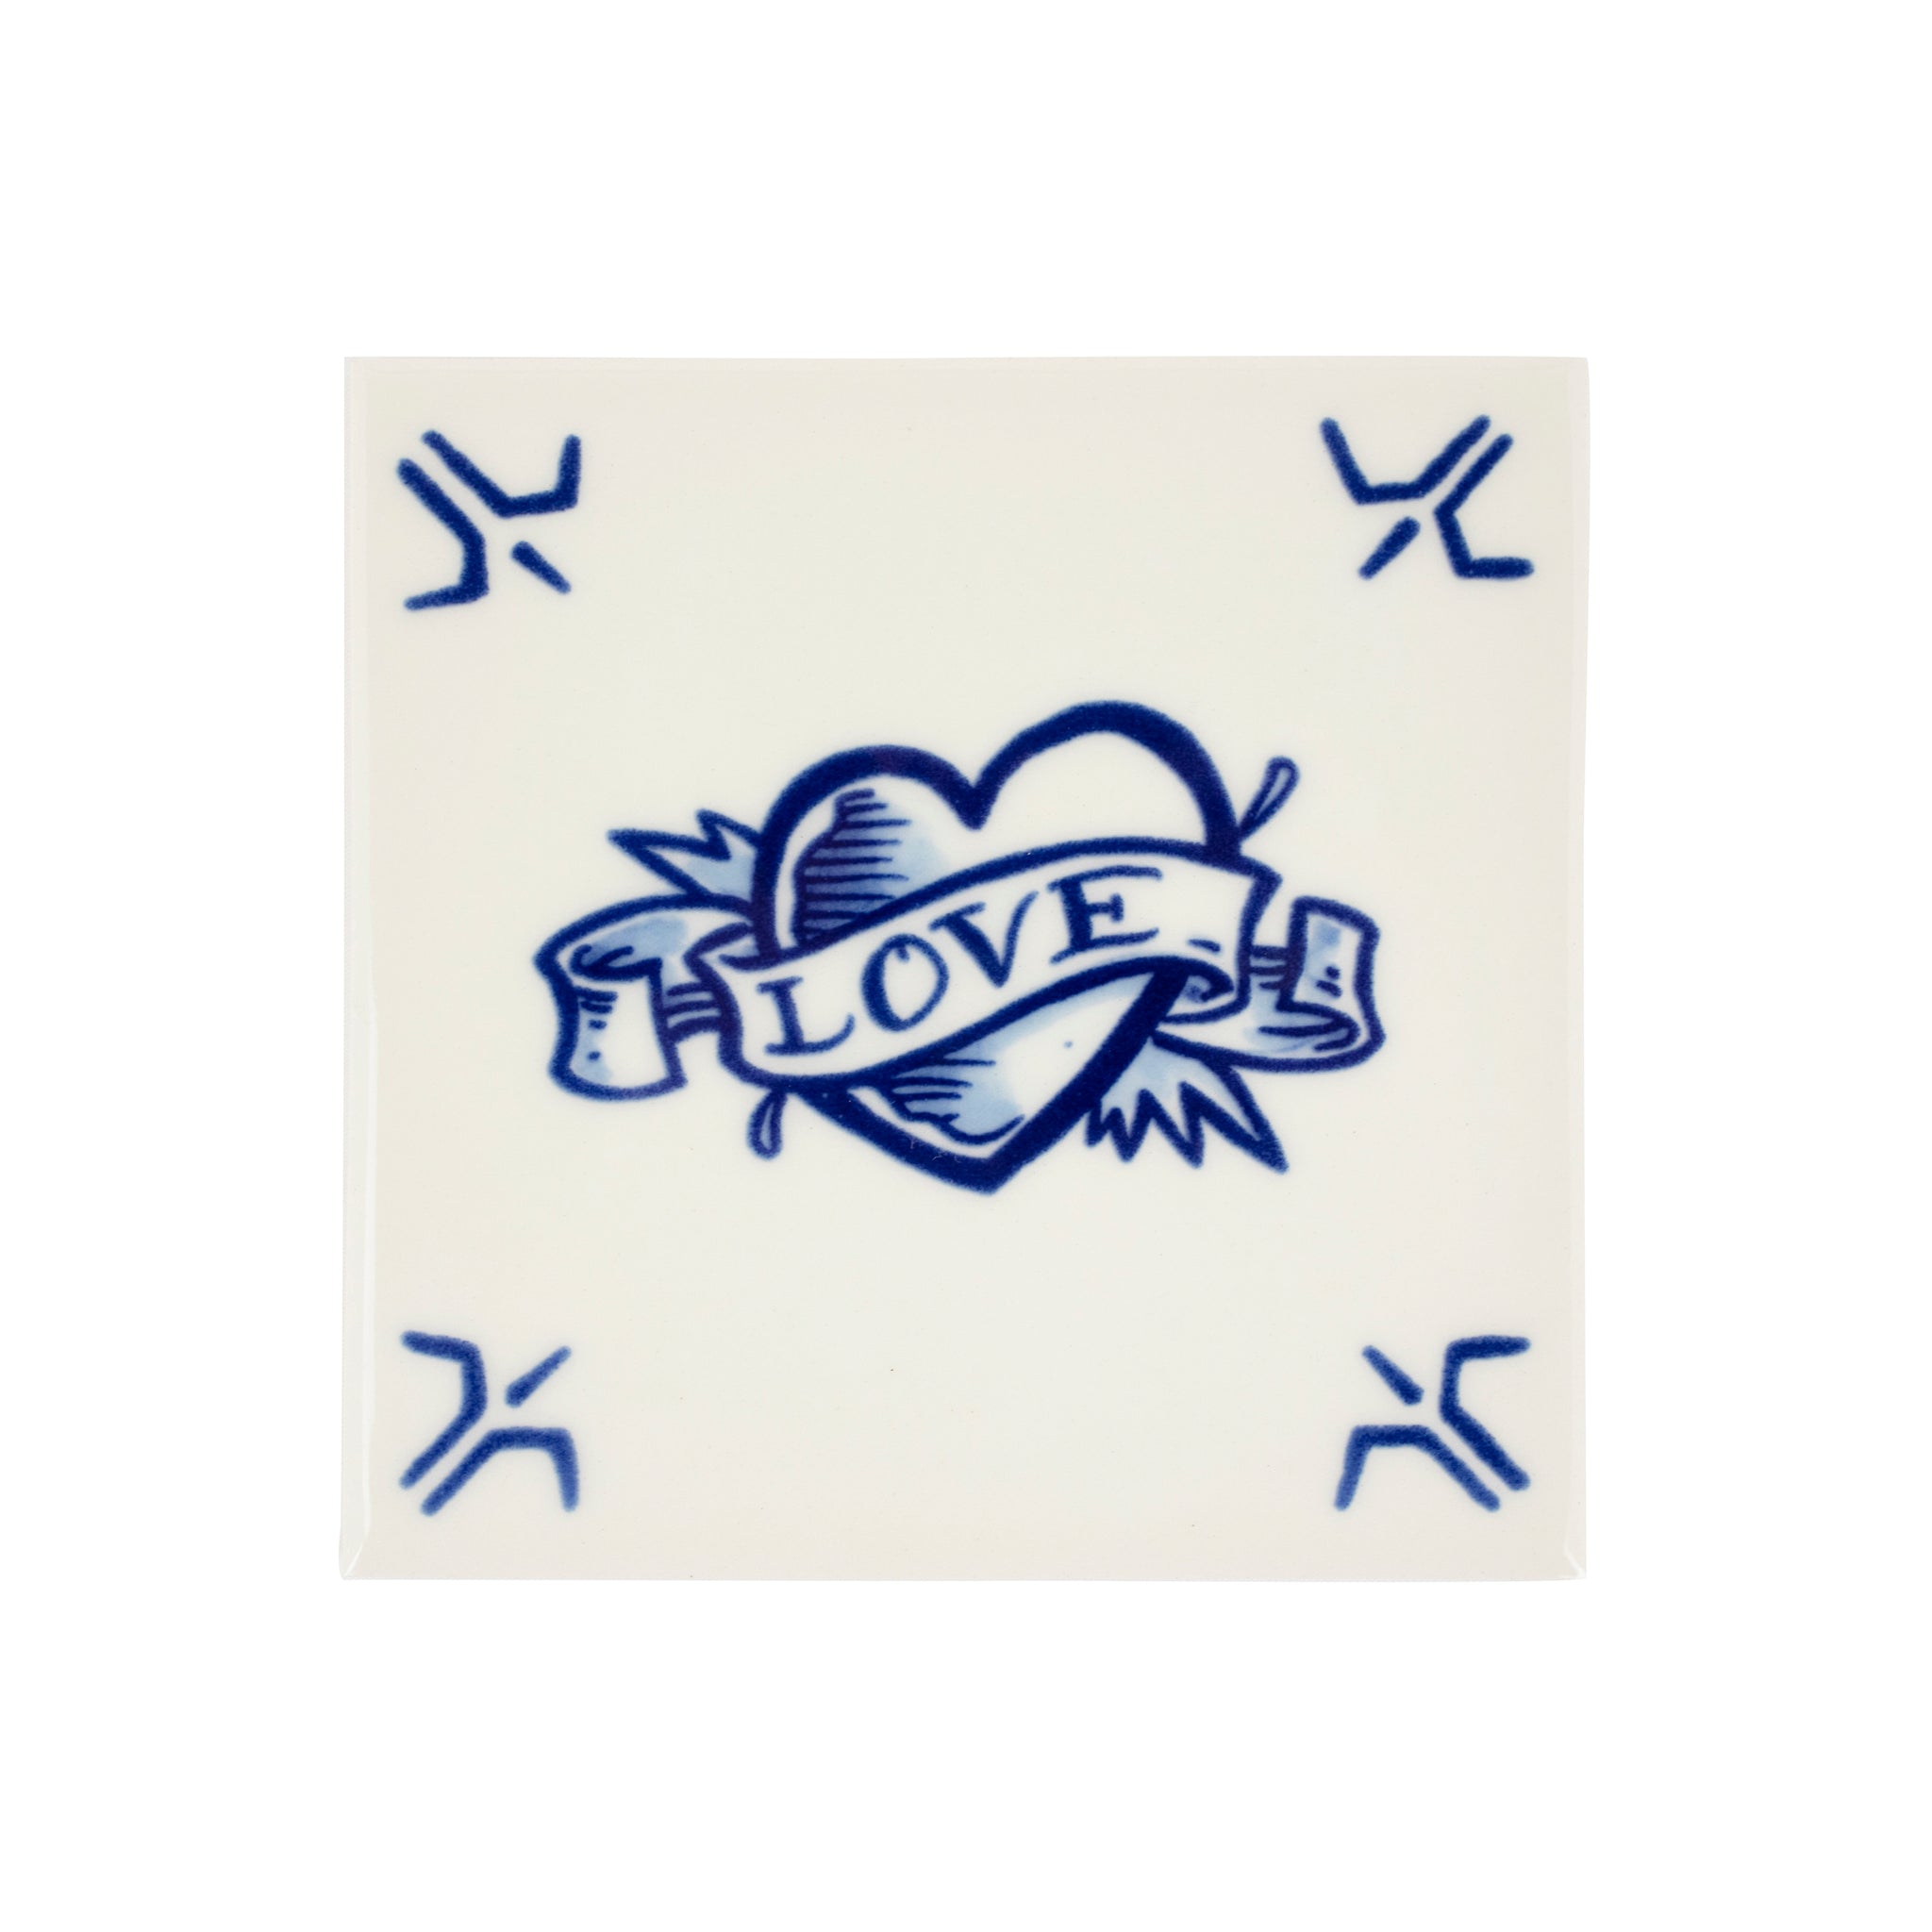 De Schiffmacher Royal Blue Tattoo collectie is een unieke samenwerking tussen tattoo artist Henk Schiffmacher en Royal Delft - Porcelyne Fles. Prachtige objecten zoals vazen, borden en tegels, waarbij de werelden en de tradities van beide ambachten samenkomen. Rijk aan historie, cultuur, traditie en symboliek.